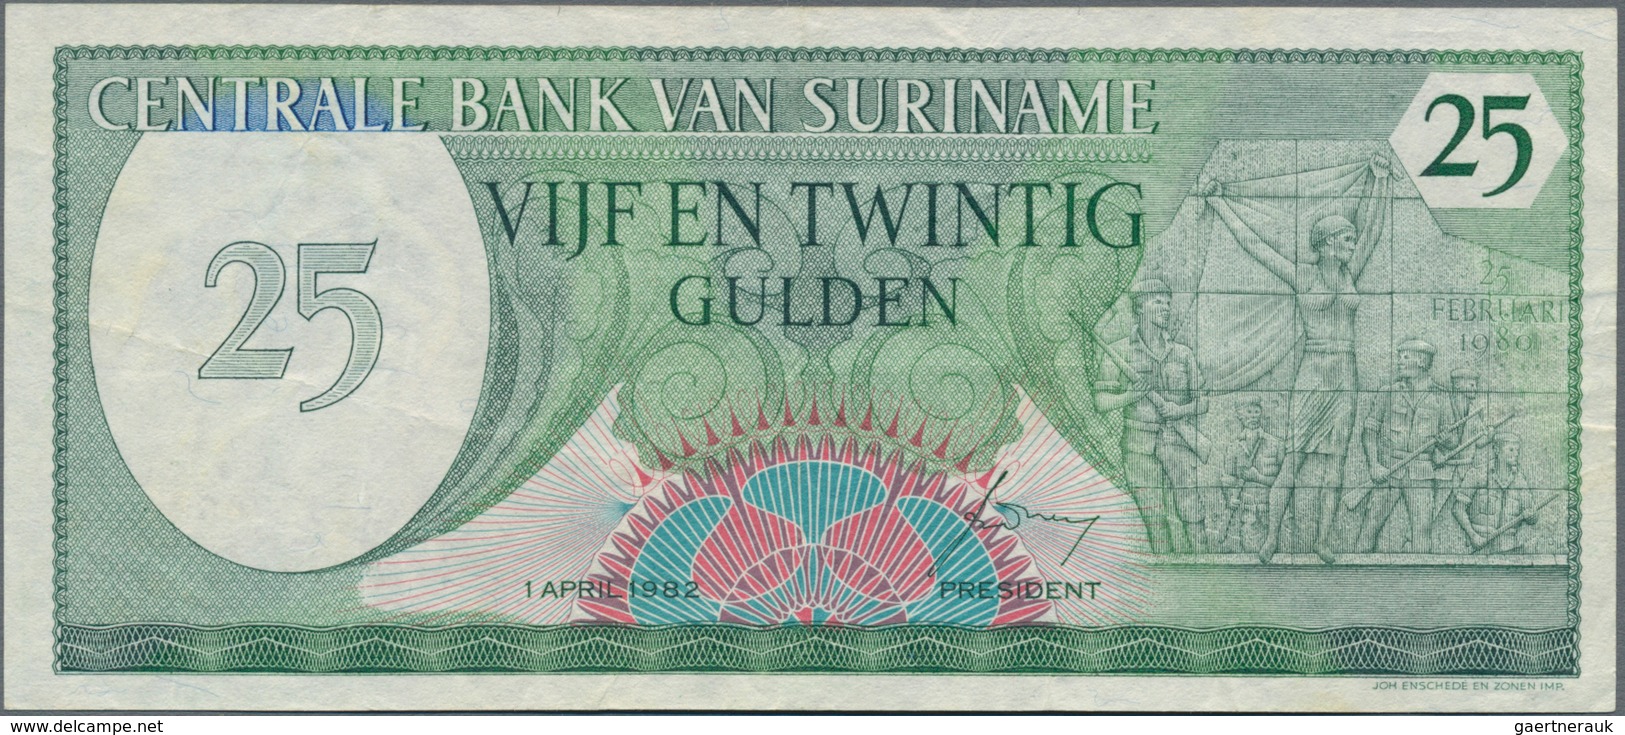 Suriname: Centrale Bank Van Suriname Nice Lot With 13 Banknotes, Comprising 2x 1 Gulden 1963 (F), 4x - Surinam